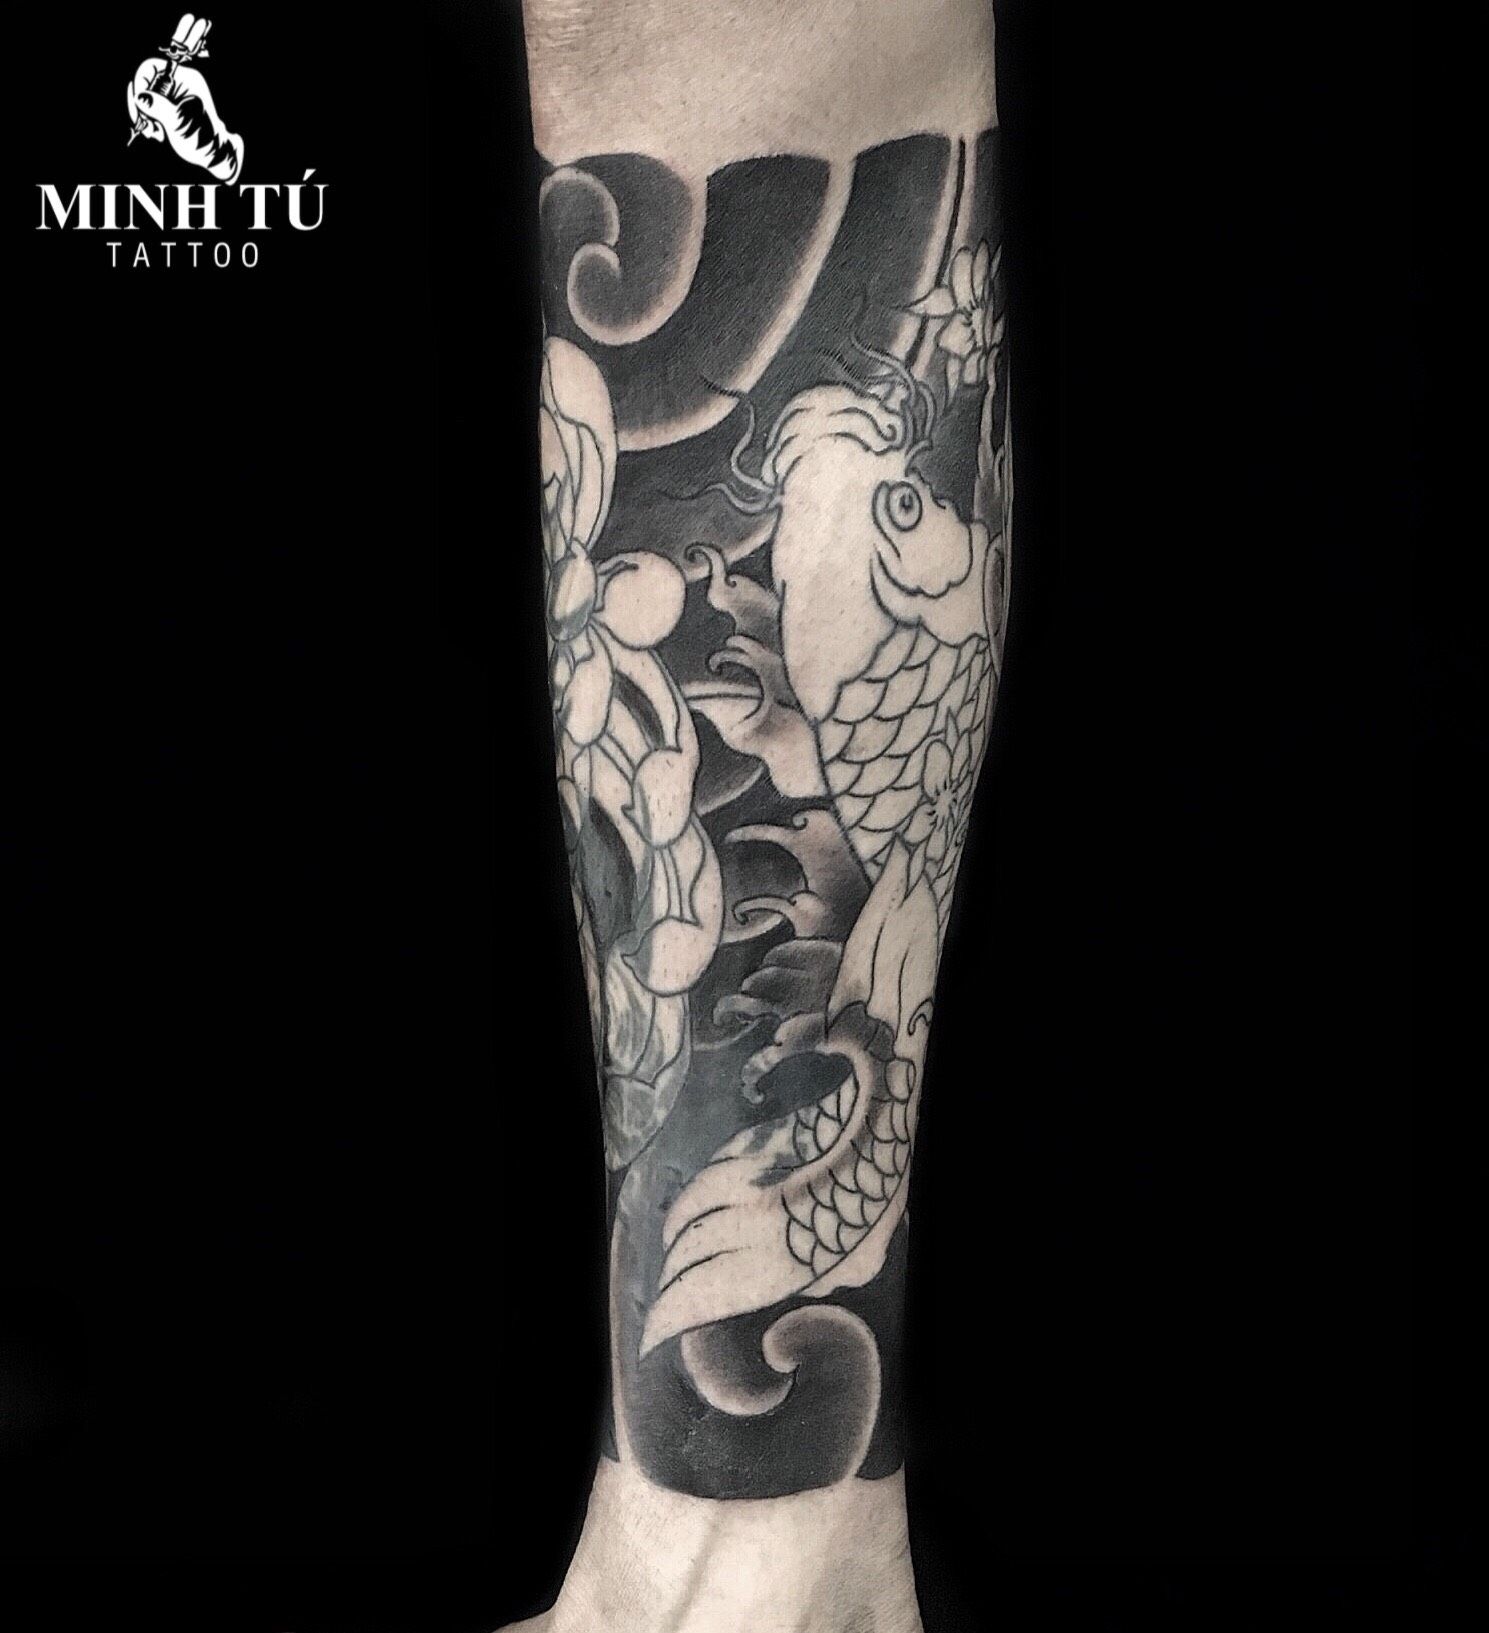 Hình xăm tattoo cá chép bắp chân nghệ thuật phong thủy may mắn